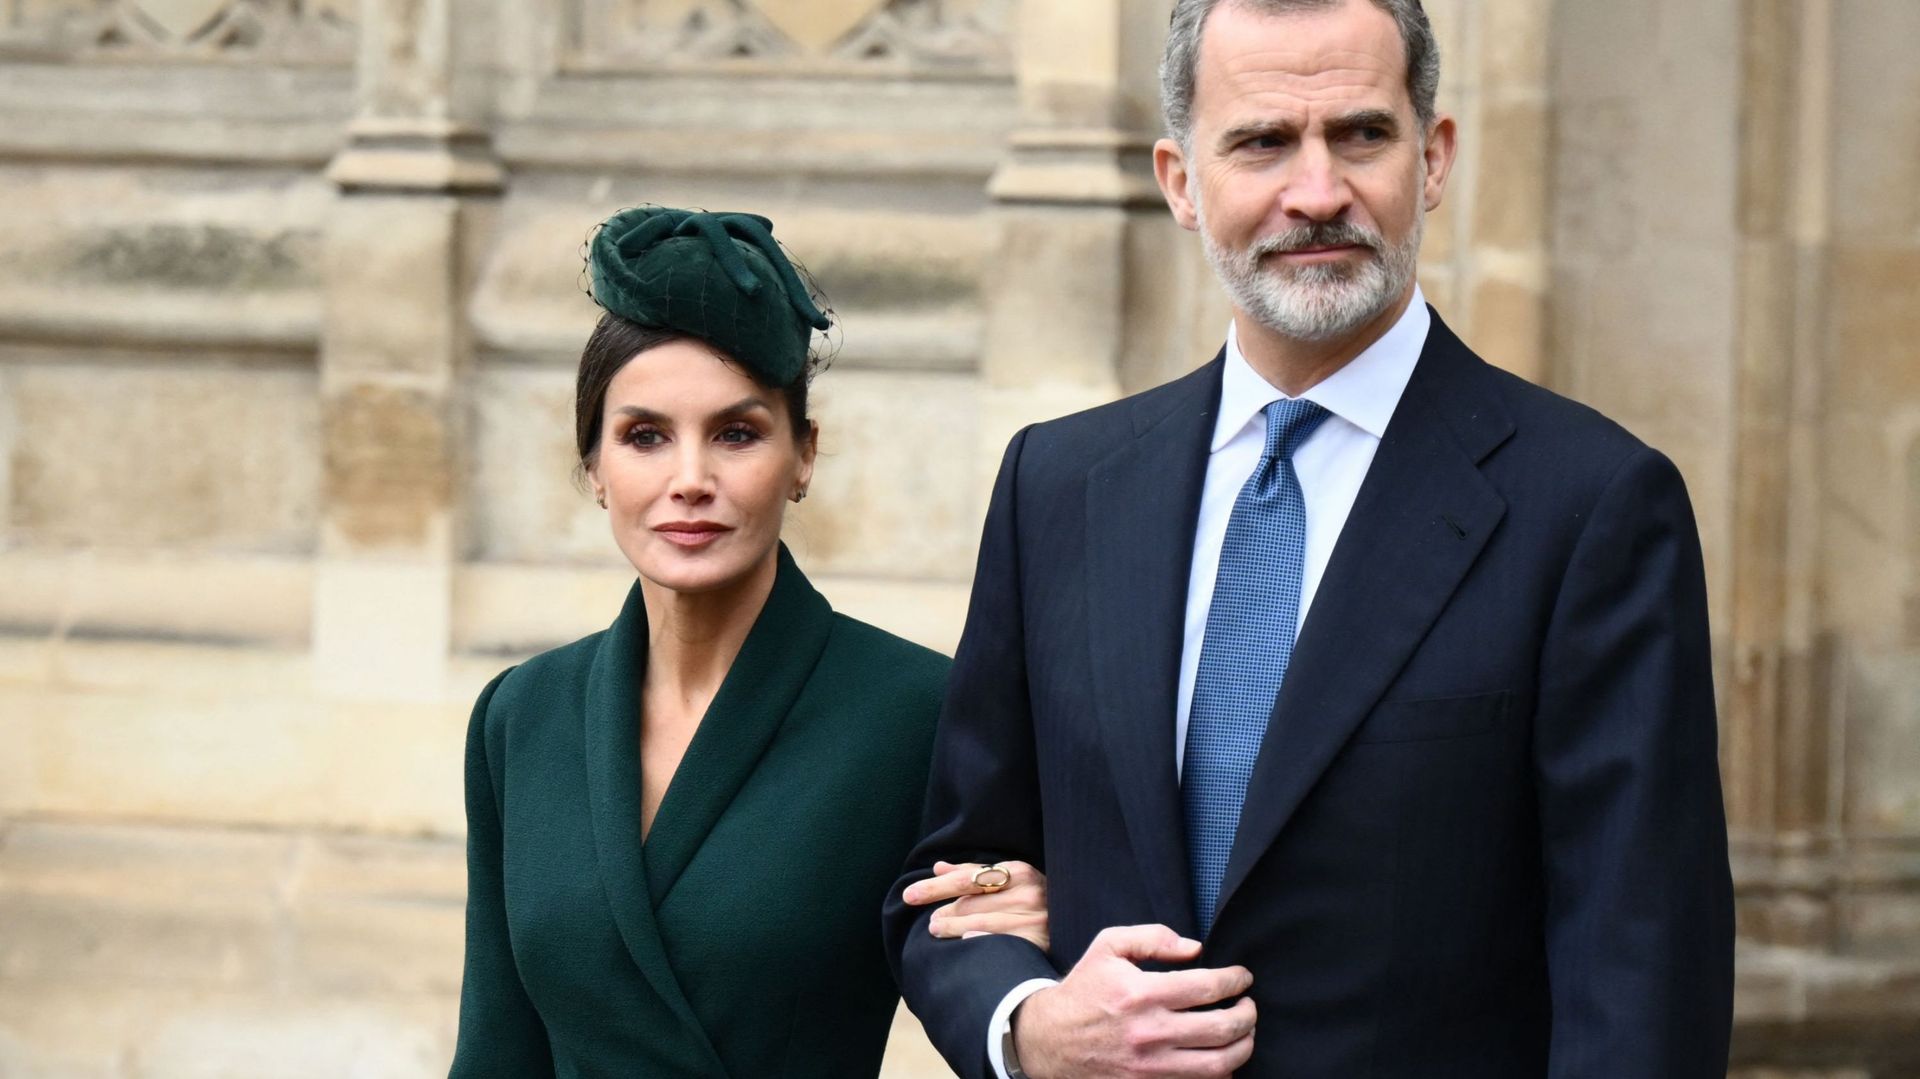 El Rey de España dispone de 2,6 millones de euros, según palacio